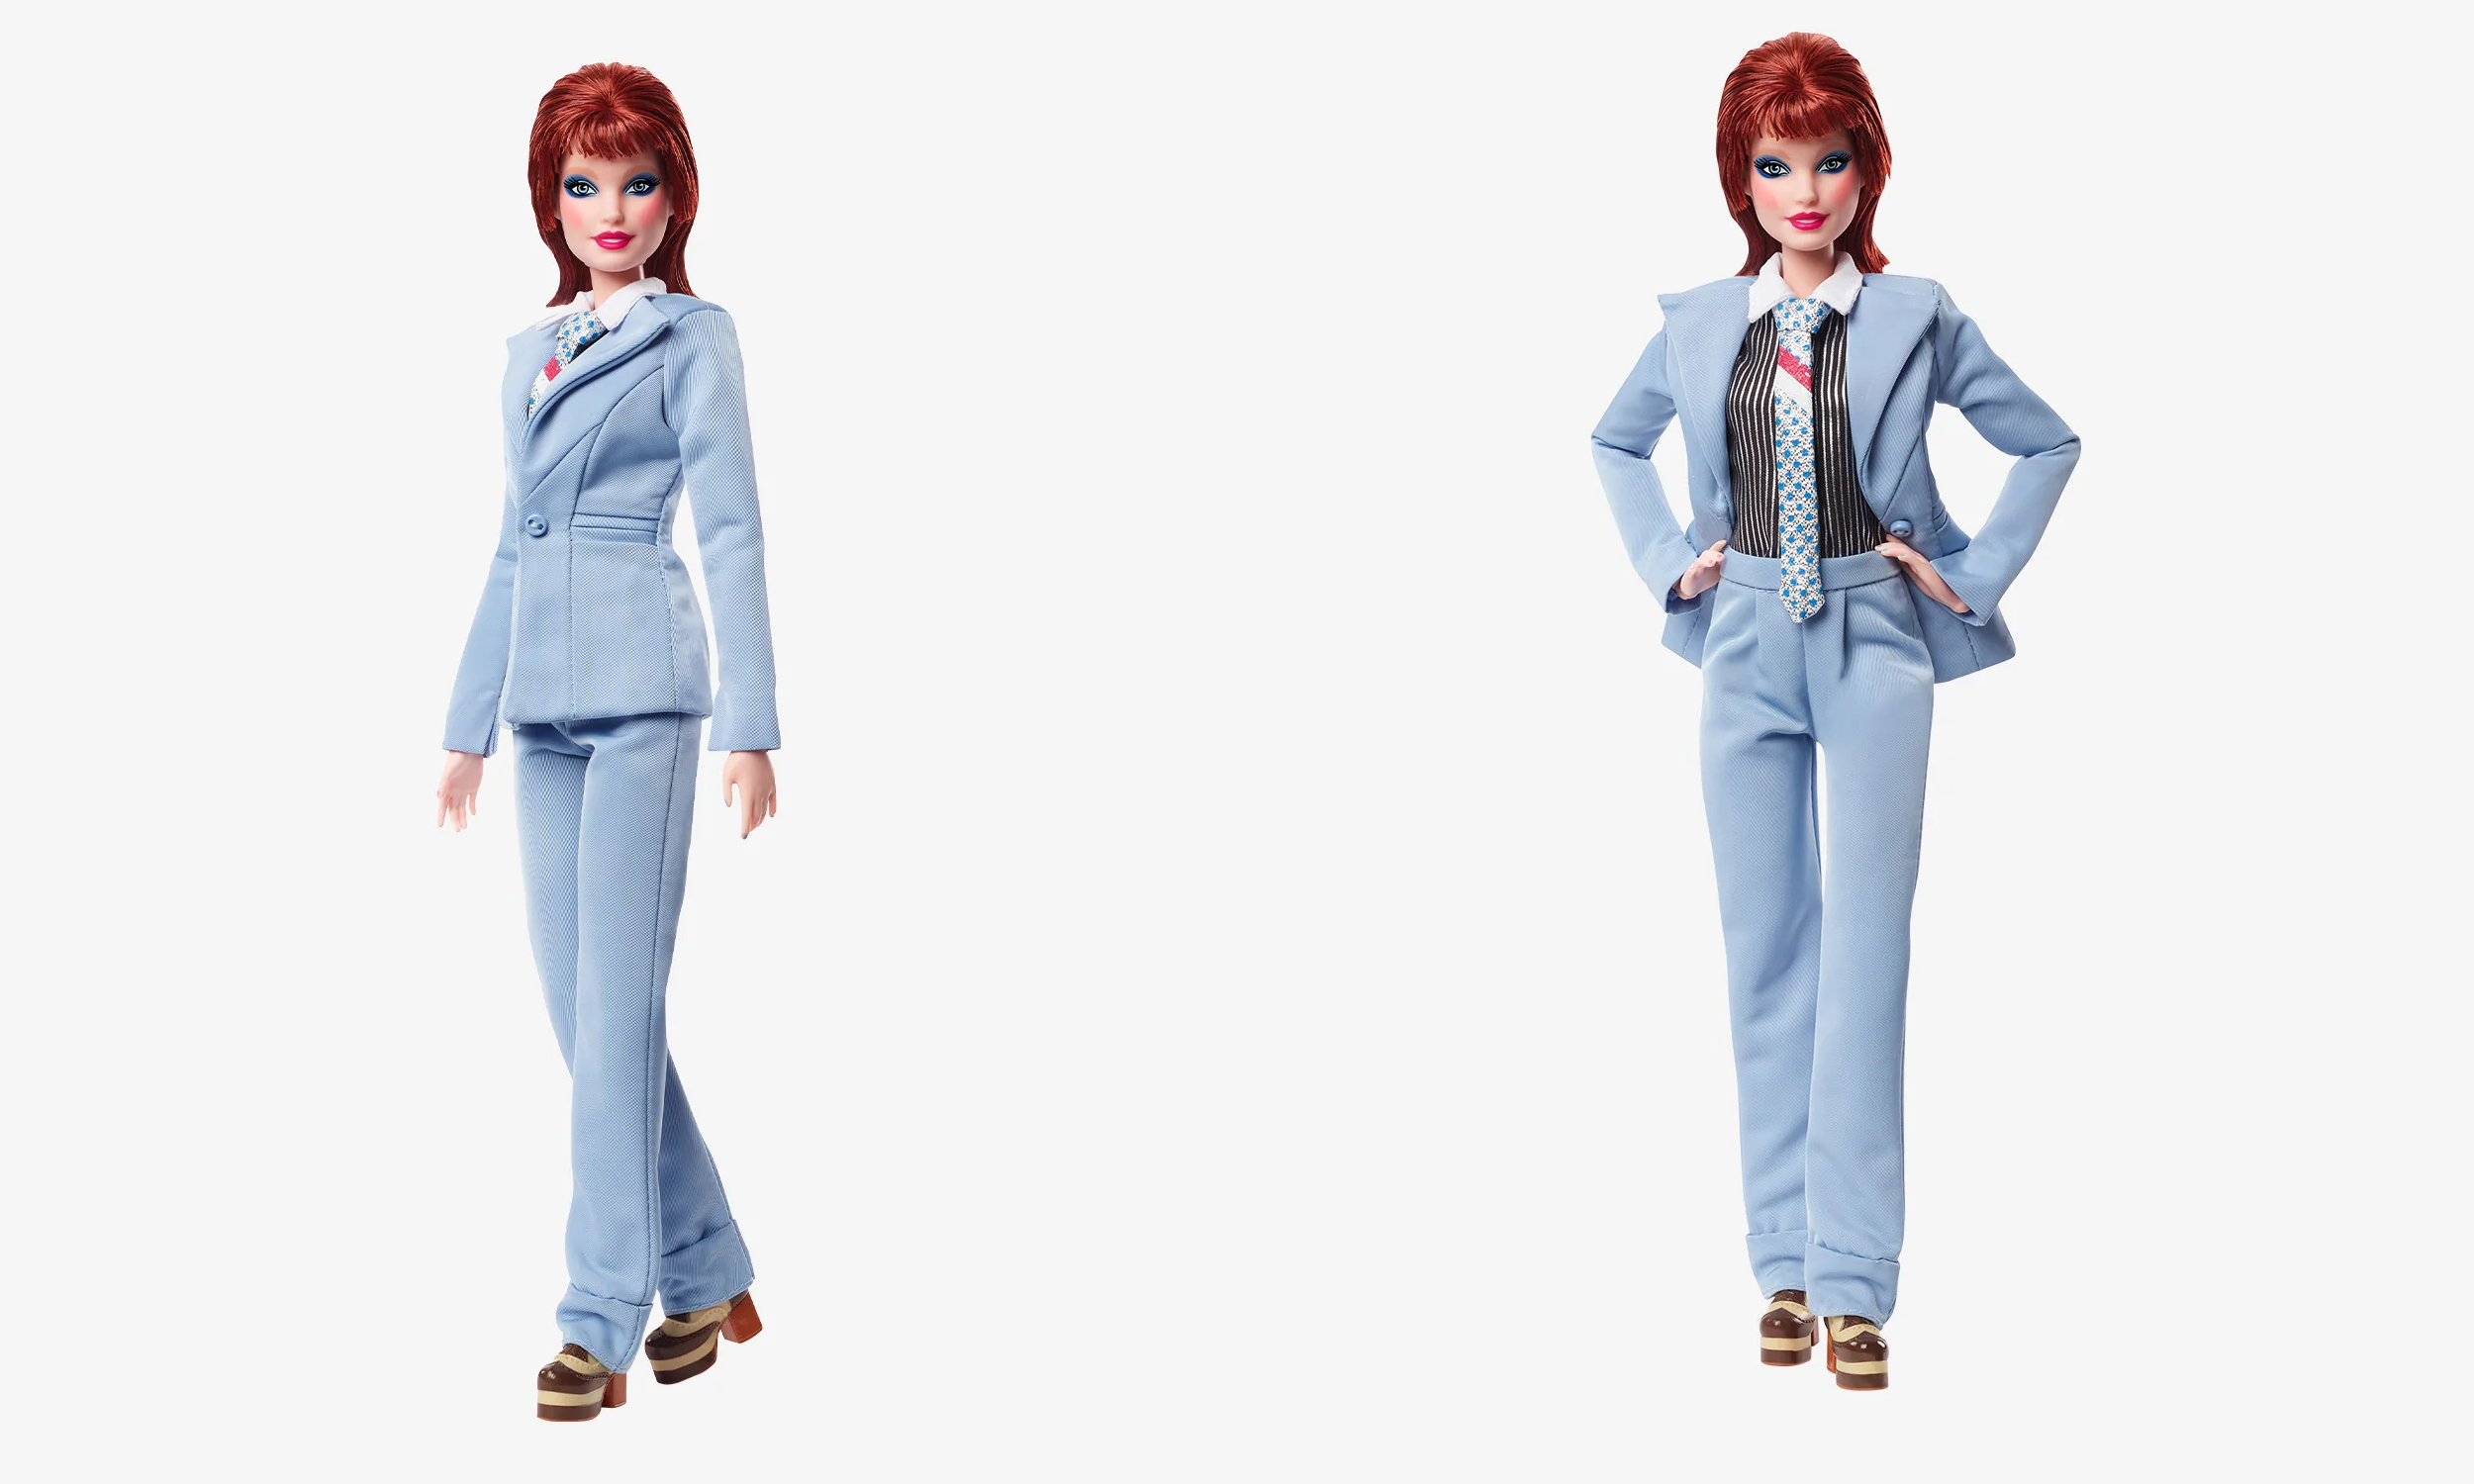 为纪念 David Bowie，美泰再度推出致敬版的芭比娃娃